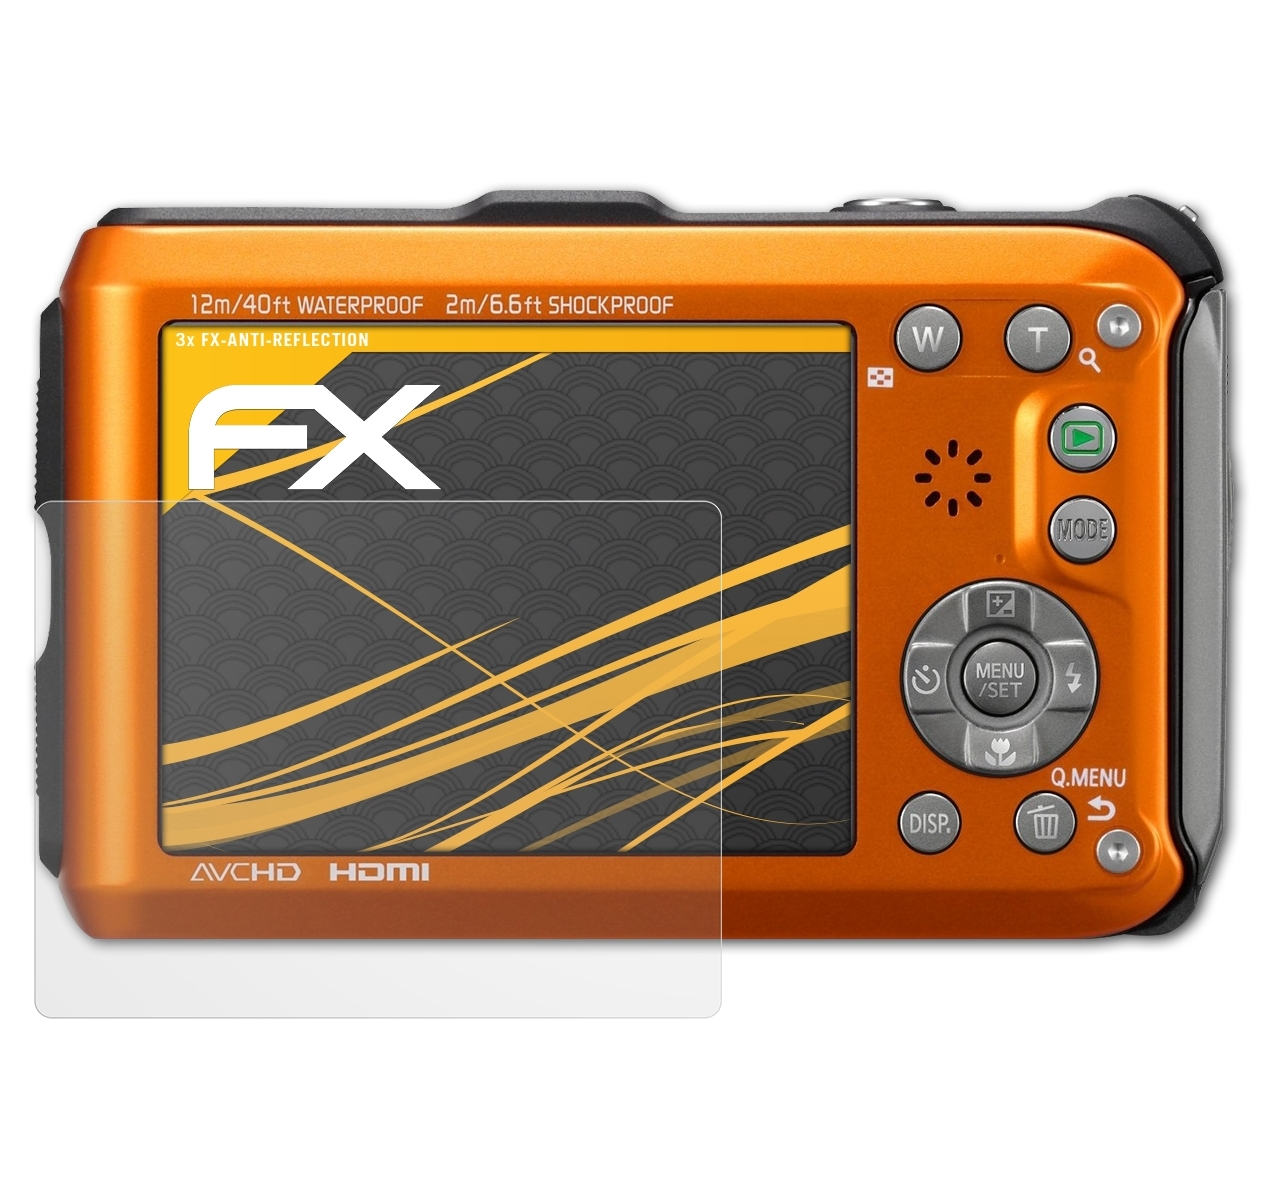 DMC-FT3) Lumix ATFOLIX Panasonic Displayschutz(für FX-Antireflex 3x